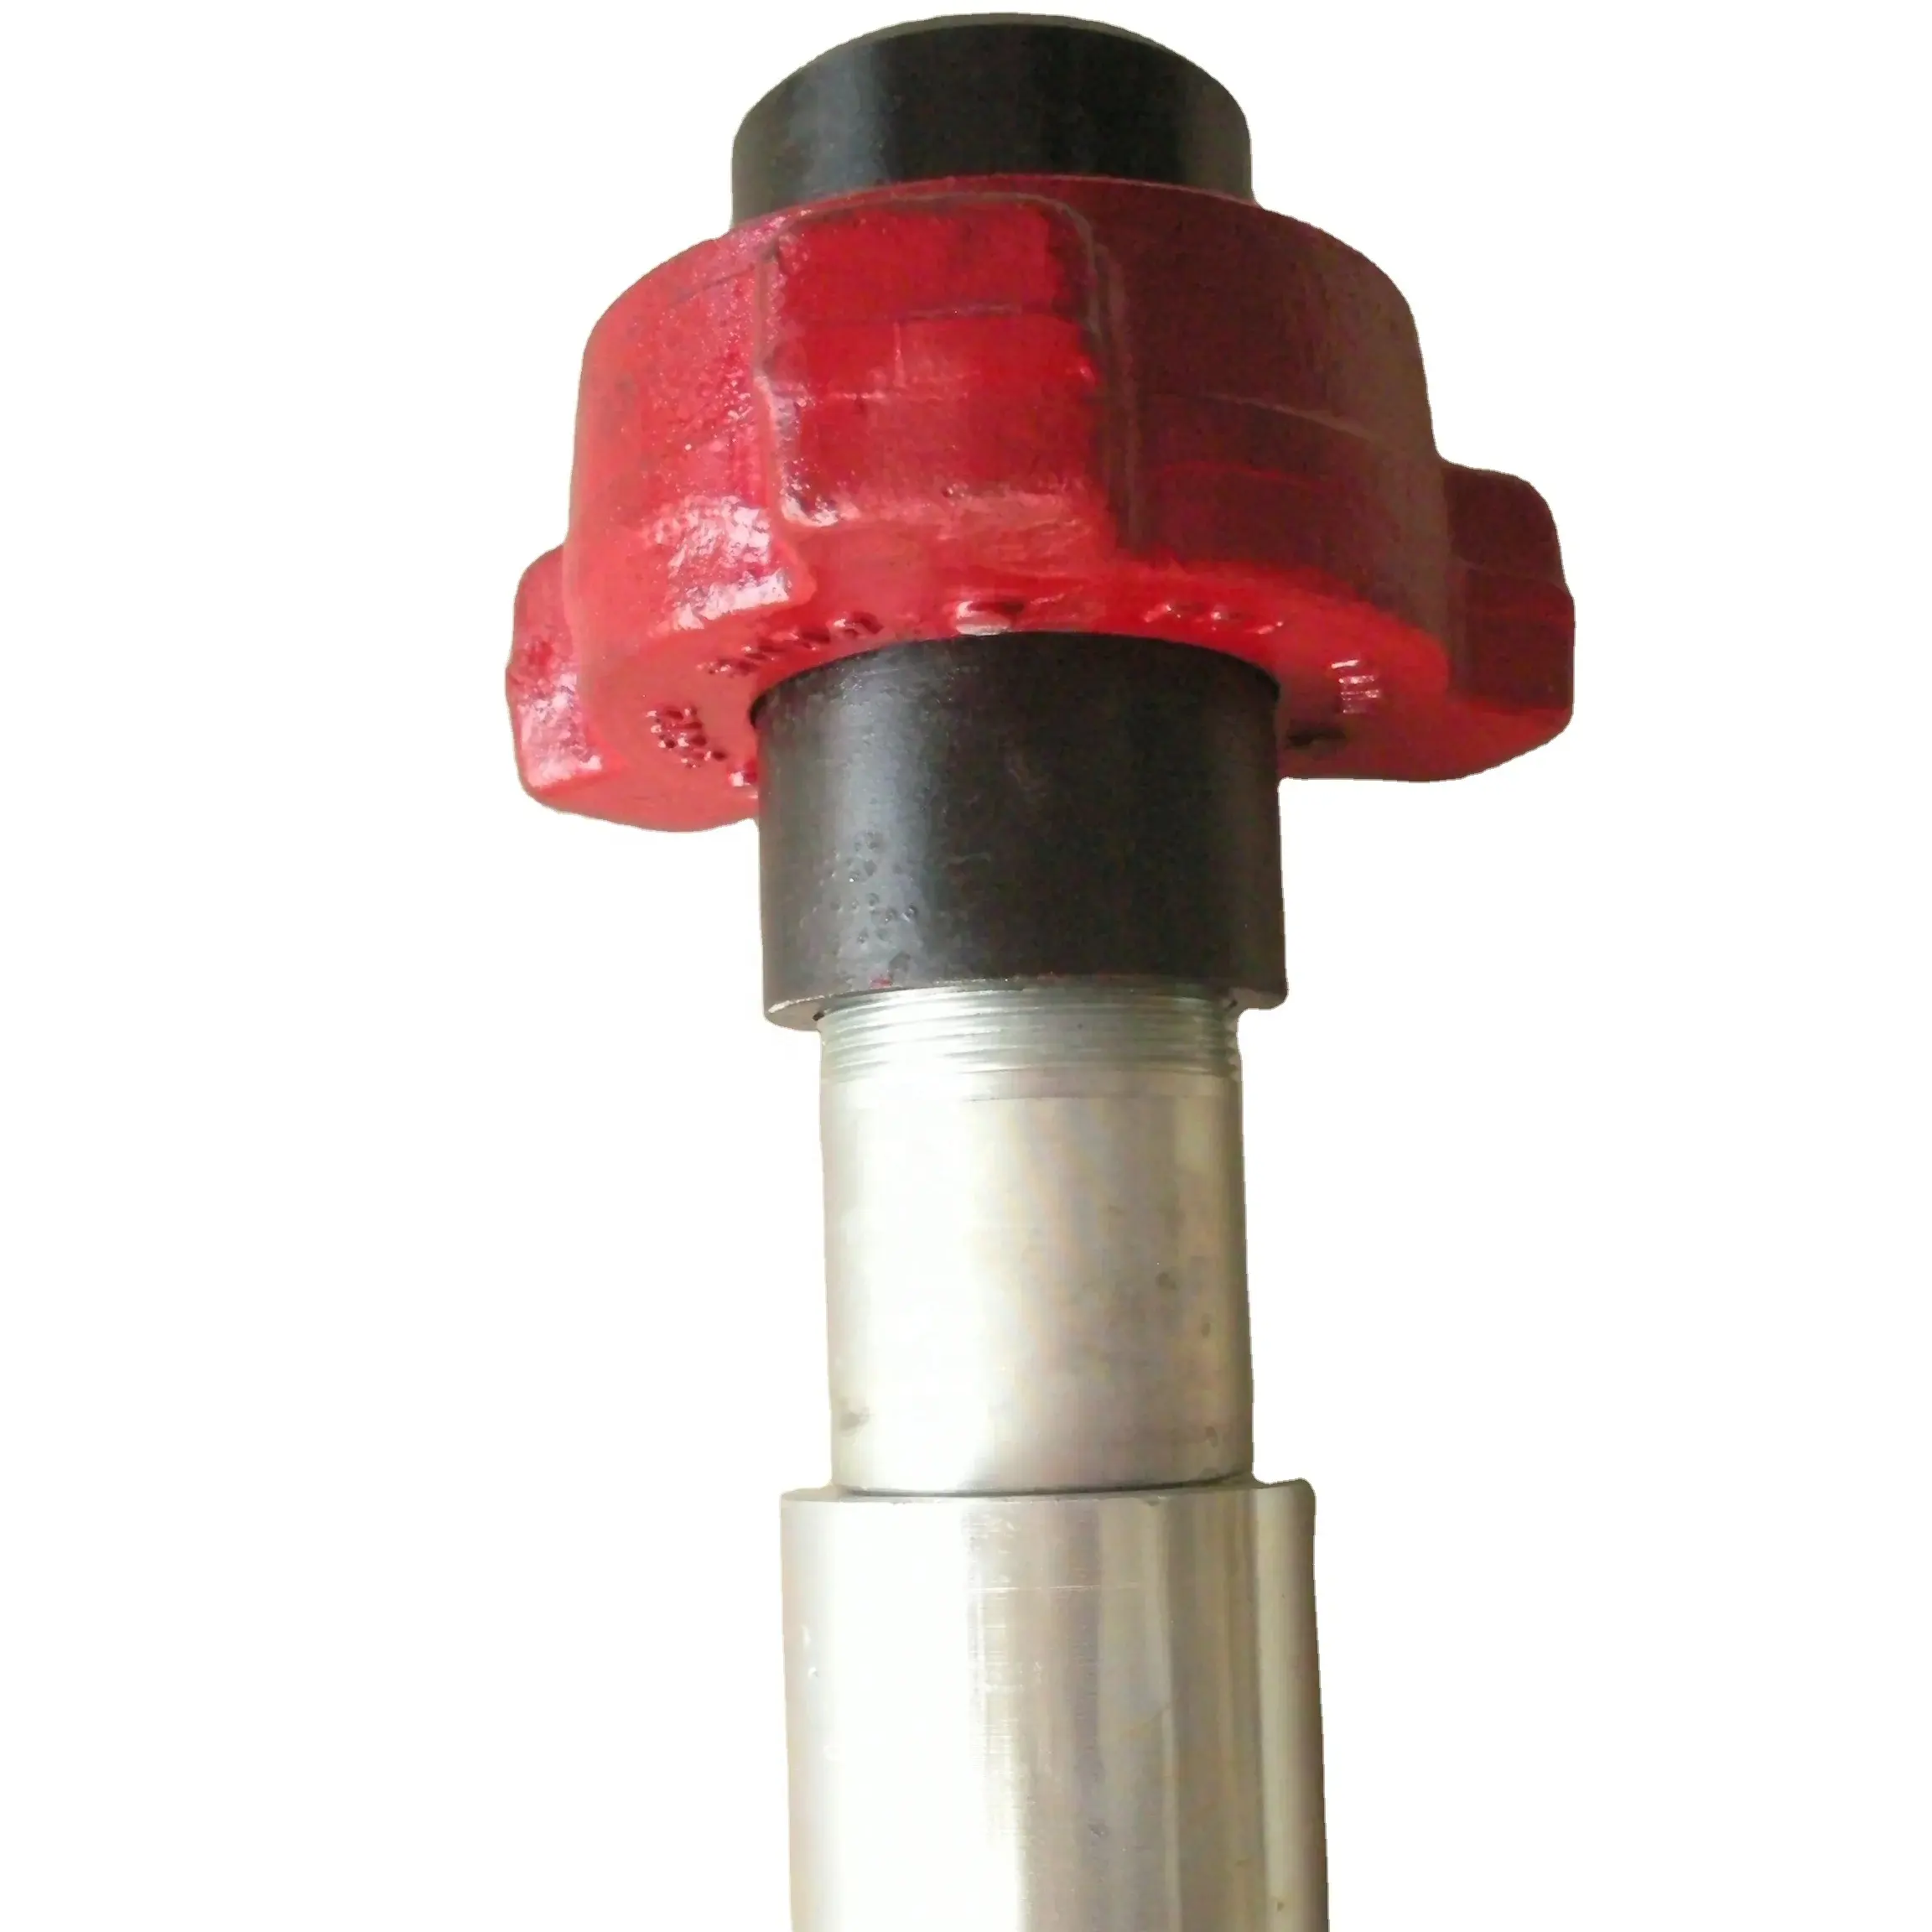 Custom 1 pollice 2 pollici 6 pollici tubo di perforazione con martello raccordi raccordi tubo rotante